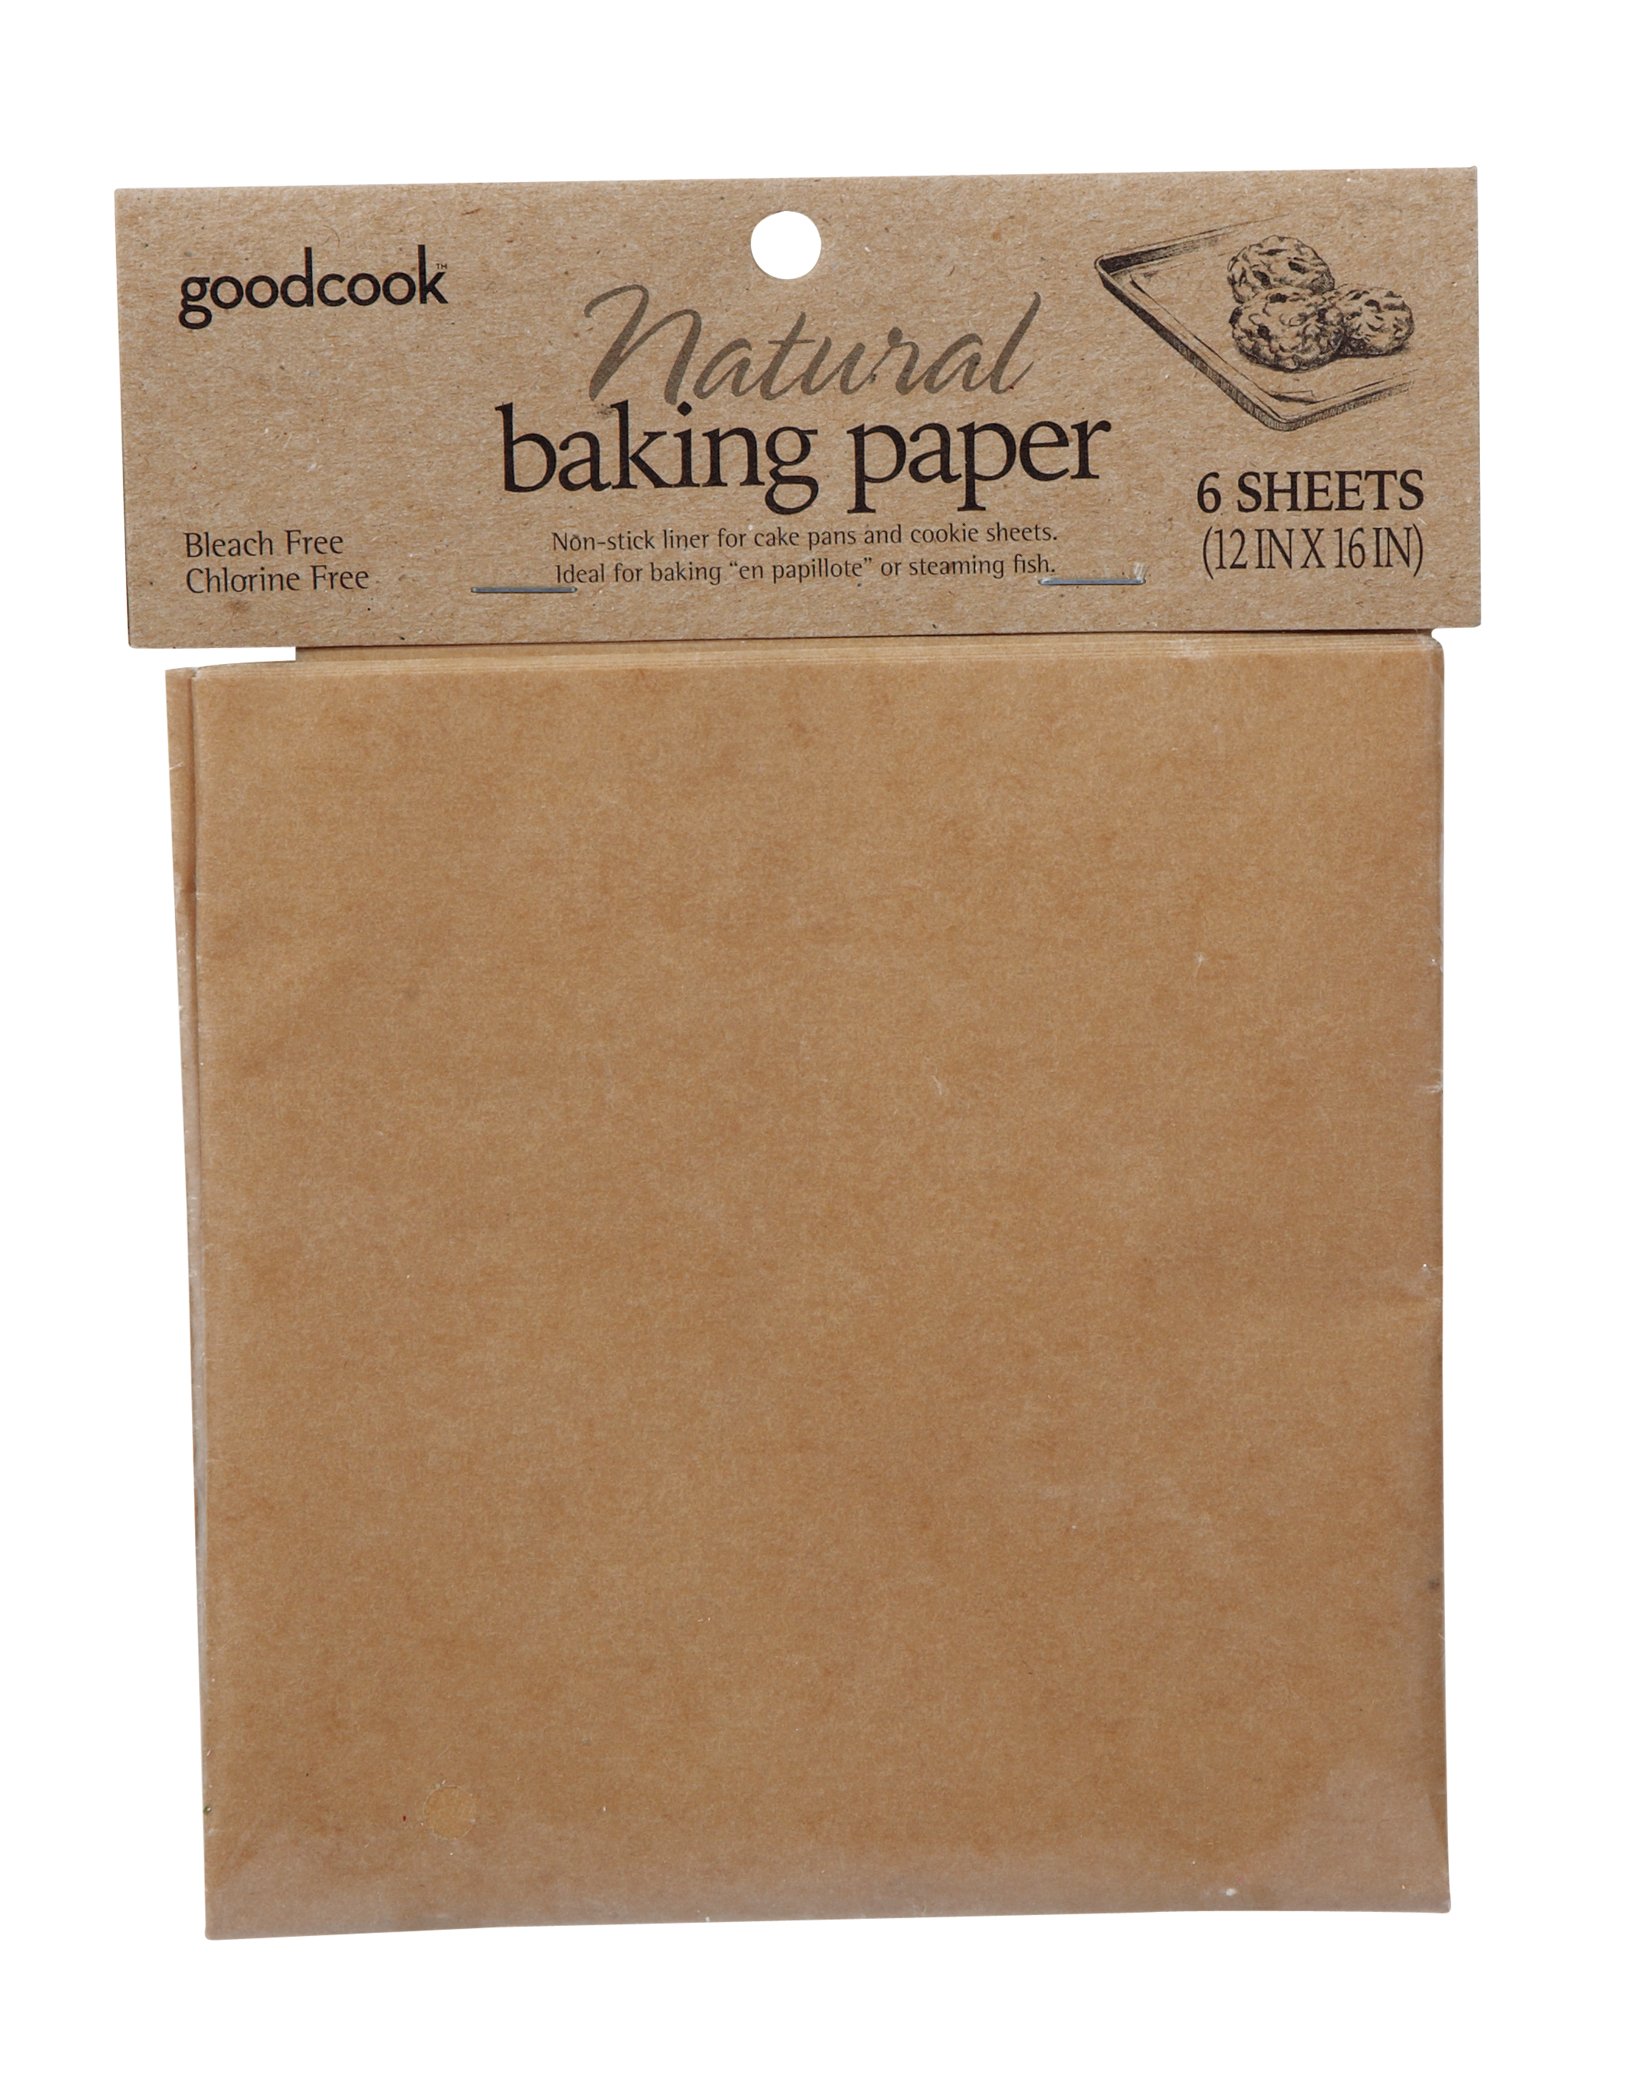 H-E-B Simply Prep Parchment Cooking Bags - Shop Foil & Plastic Wrap at H-E-B